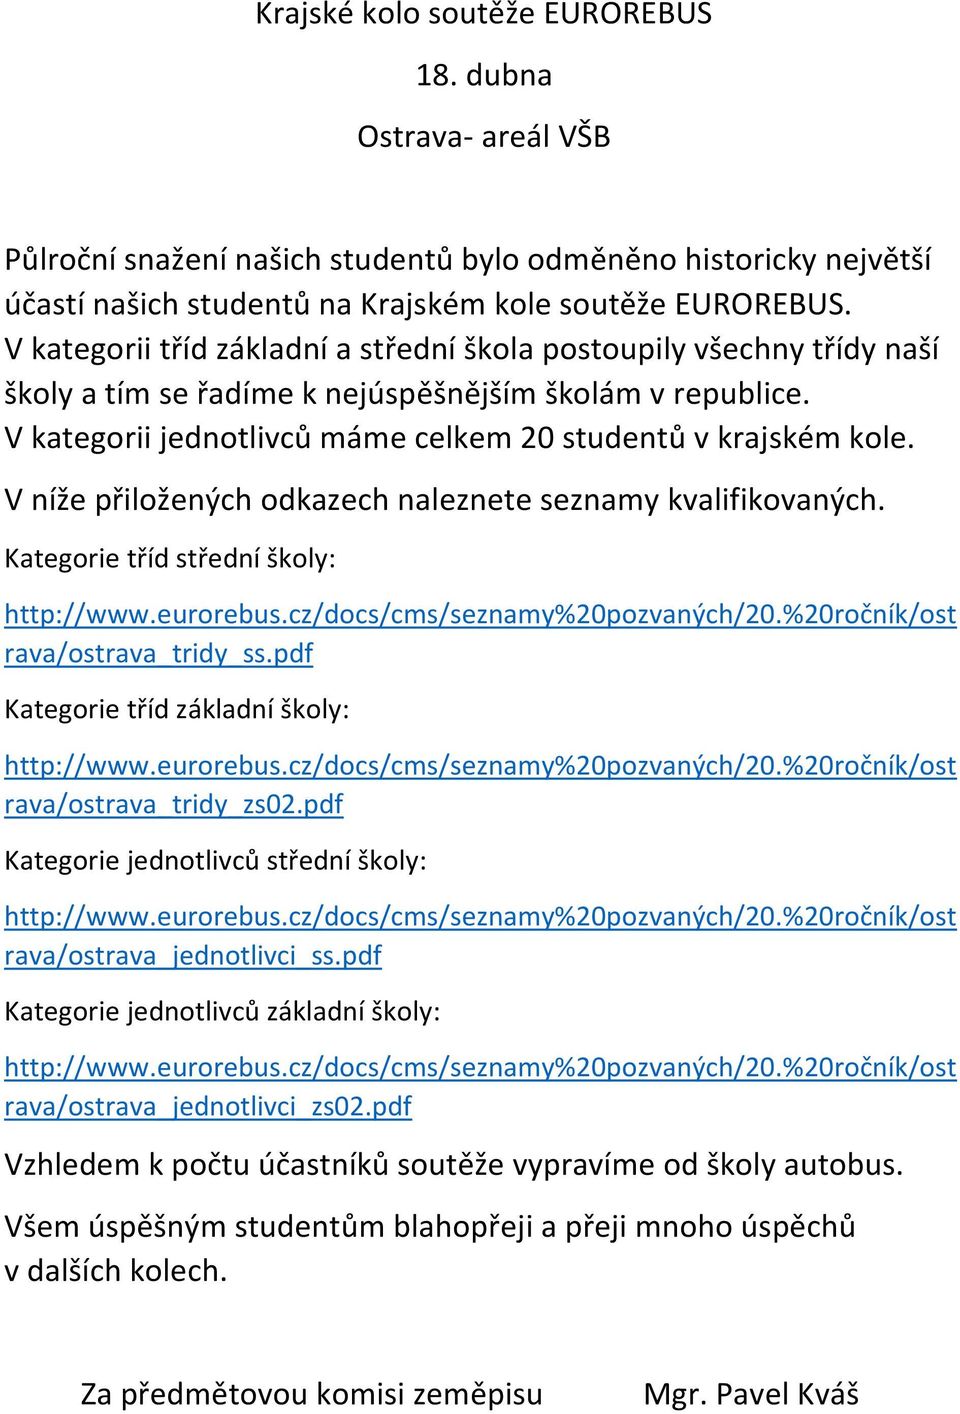 V níže přiložených odkazech naleznete seznamy kvalifikovaných. Kategorie tříd střední školy: http://www.eurorebus.cz/docs/cms/seznamy%20pozvaných/20.%20ročník/ost rava/ostrava_tridy_ss.